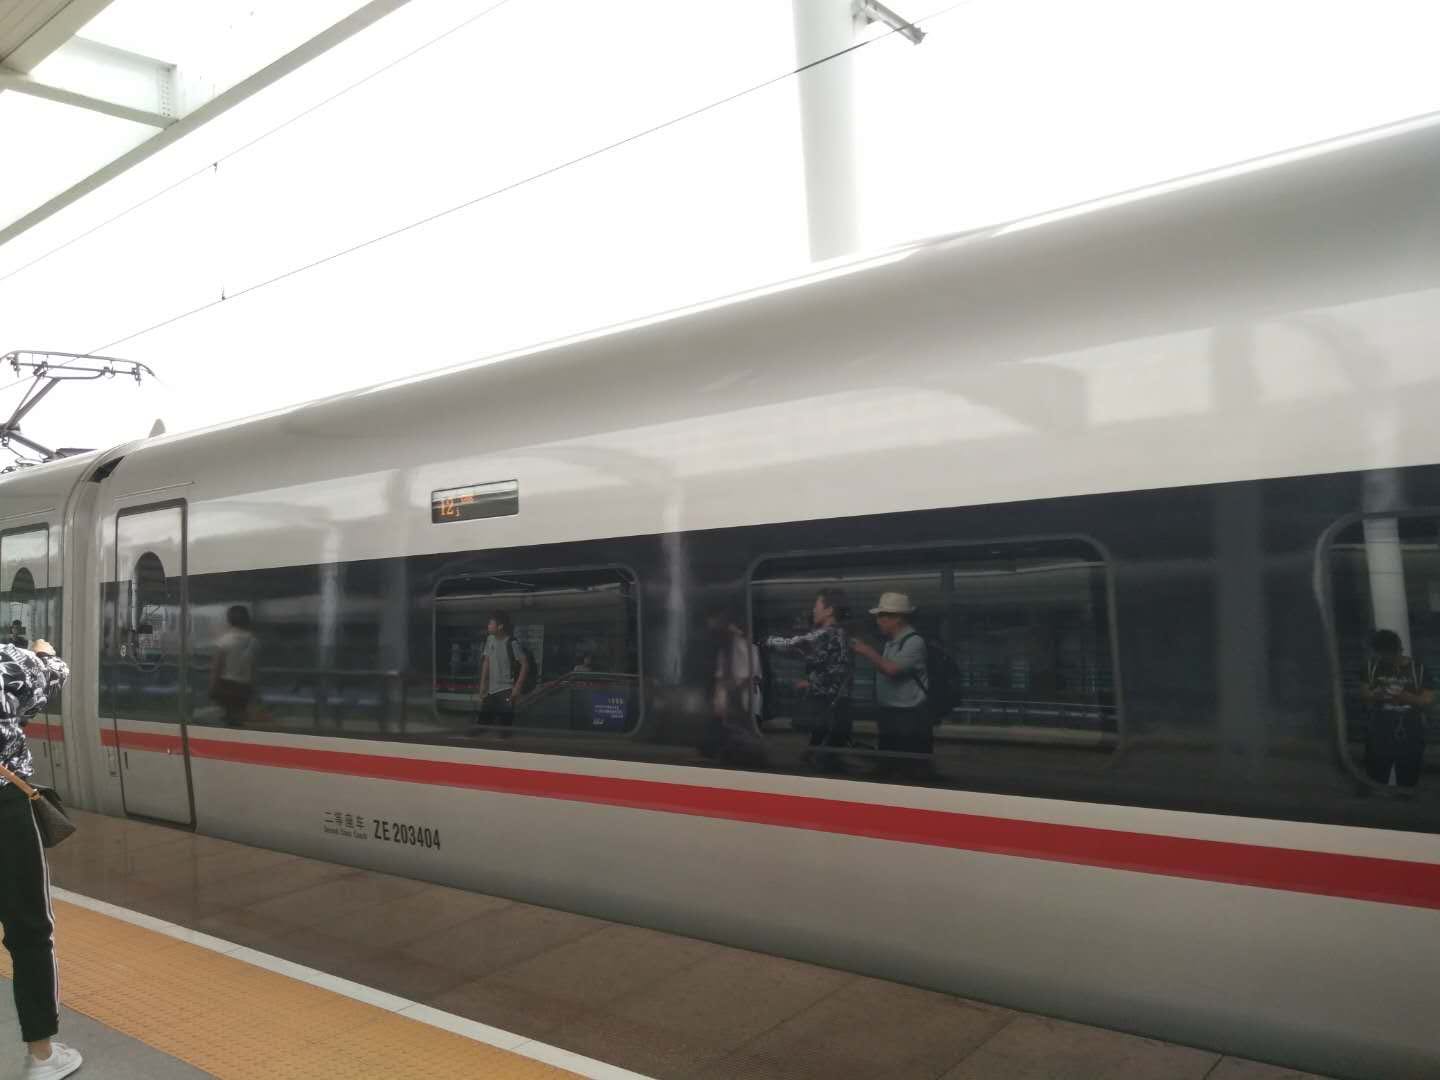 天津市地铁9号线 张贵庄智慧车站管控平台近日正式上线运行